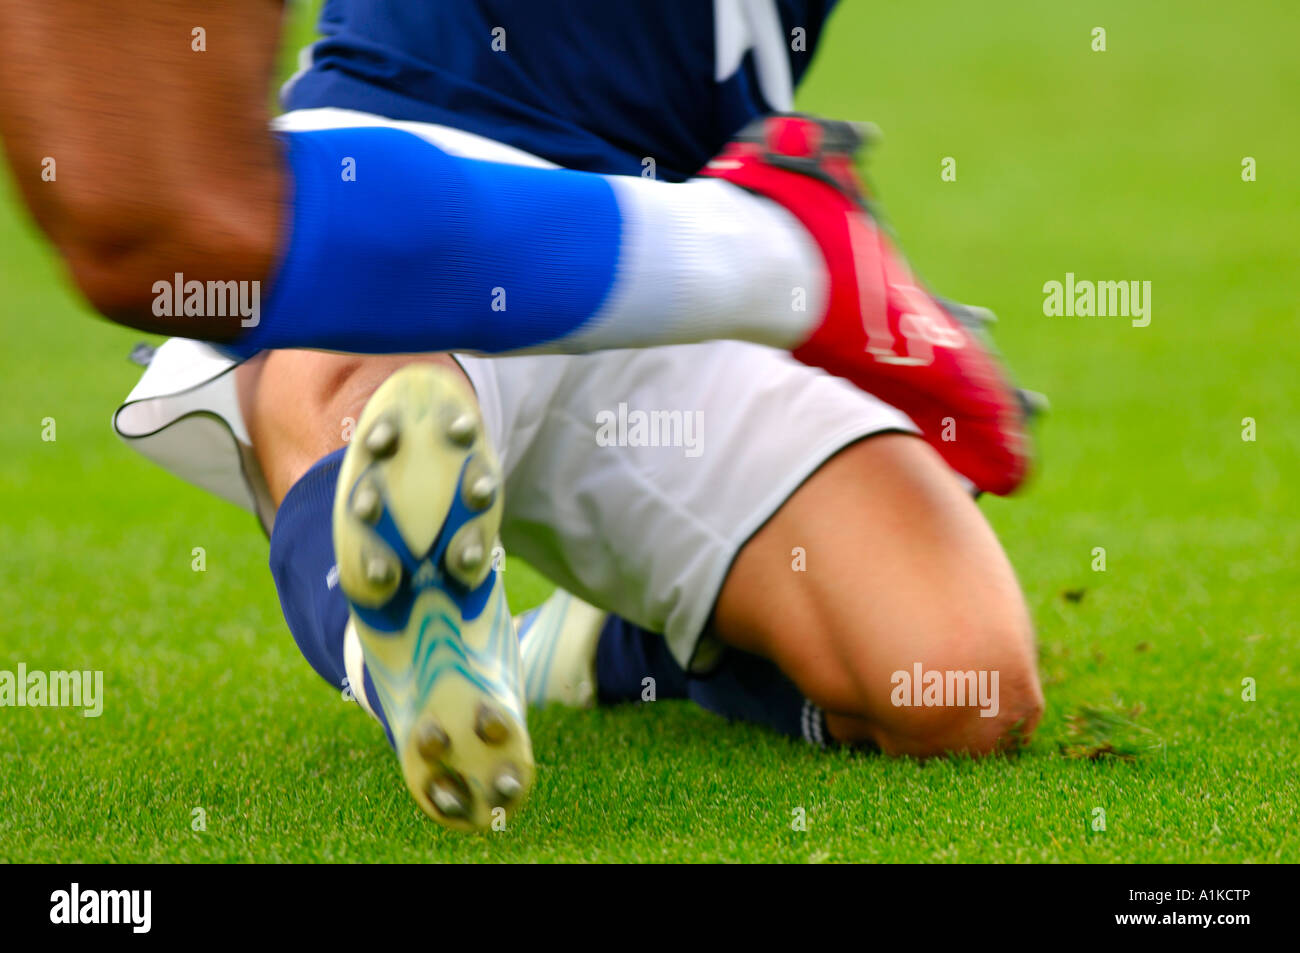 Foul an ein Fußballspiel, Soccerplayer immer gefoult Stockfoto